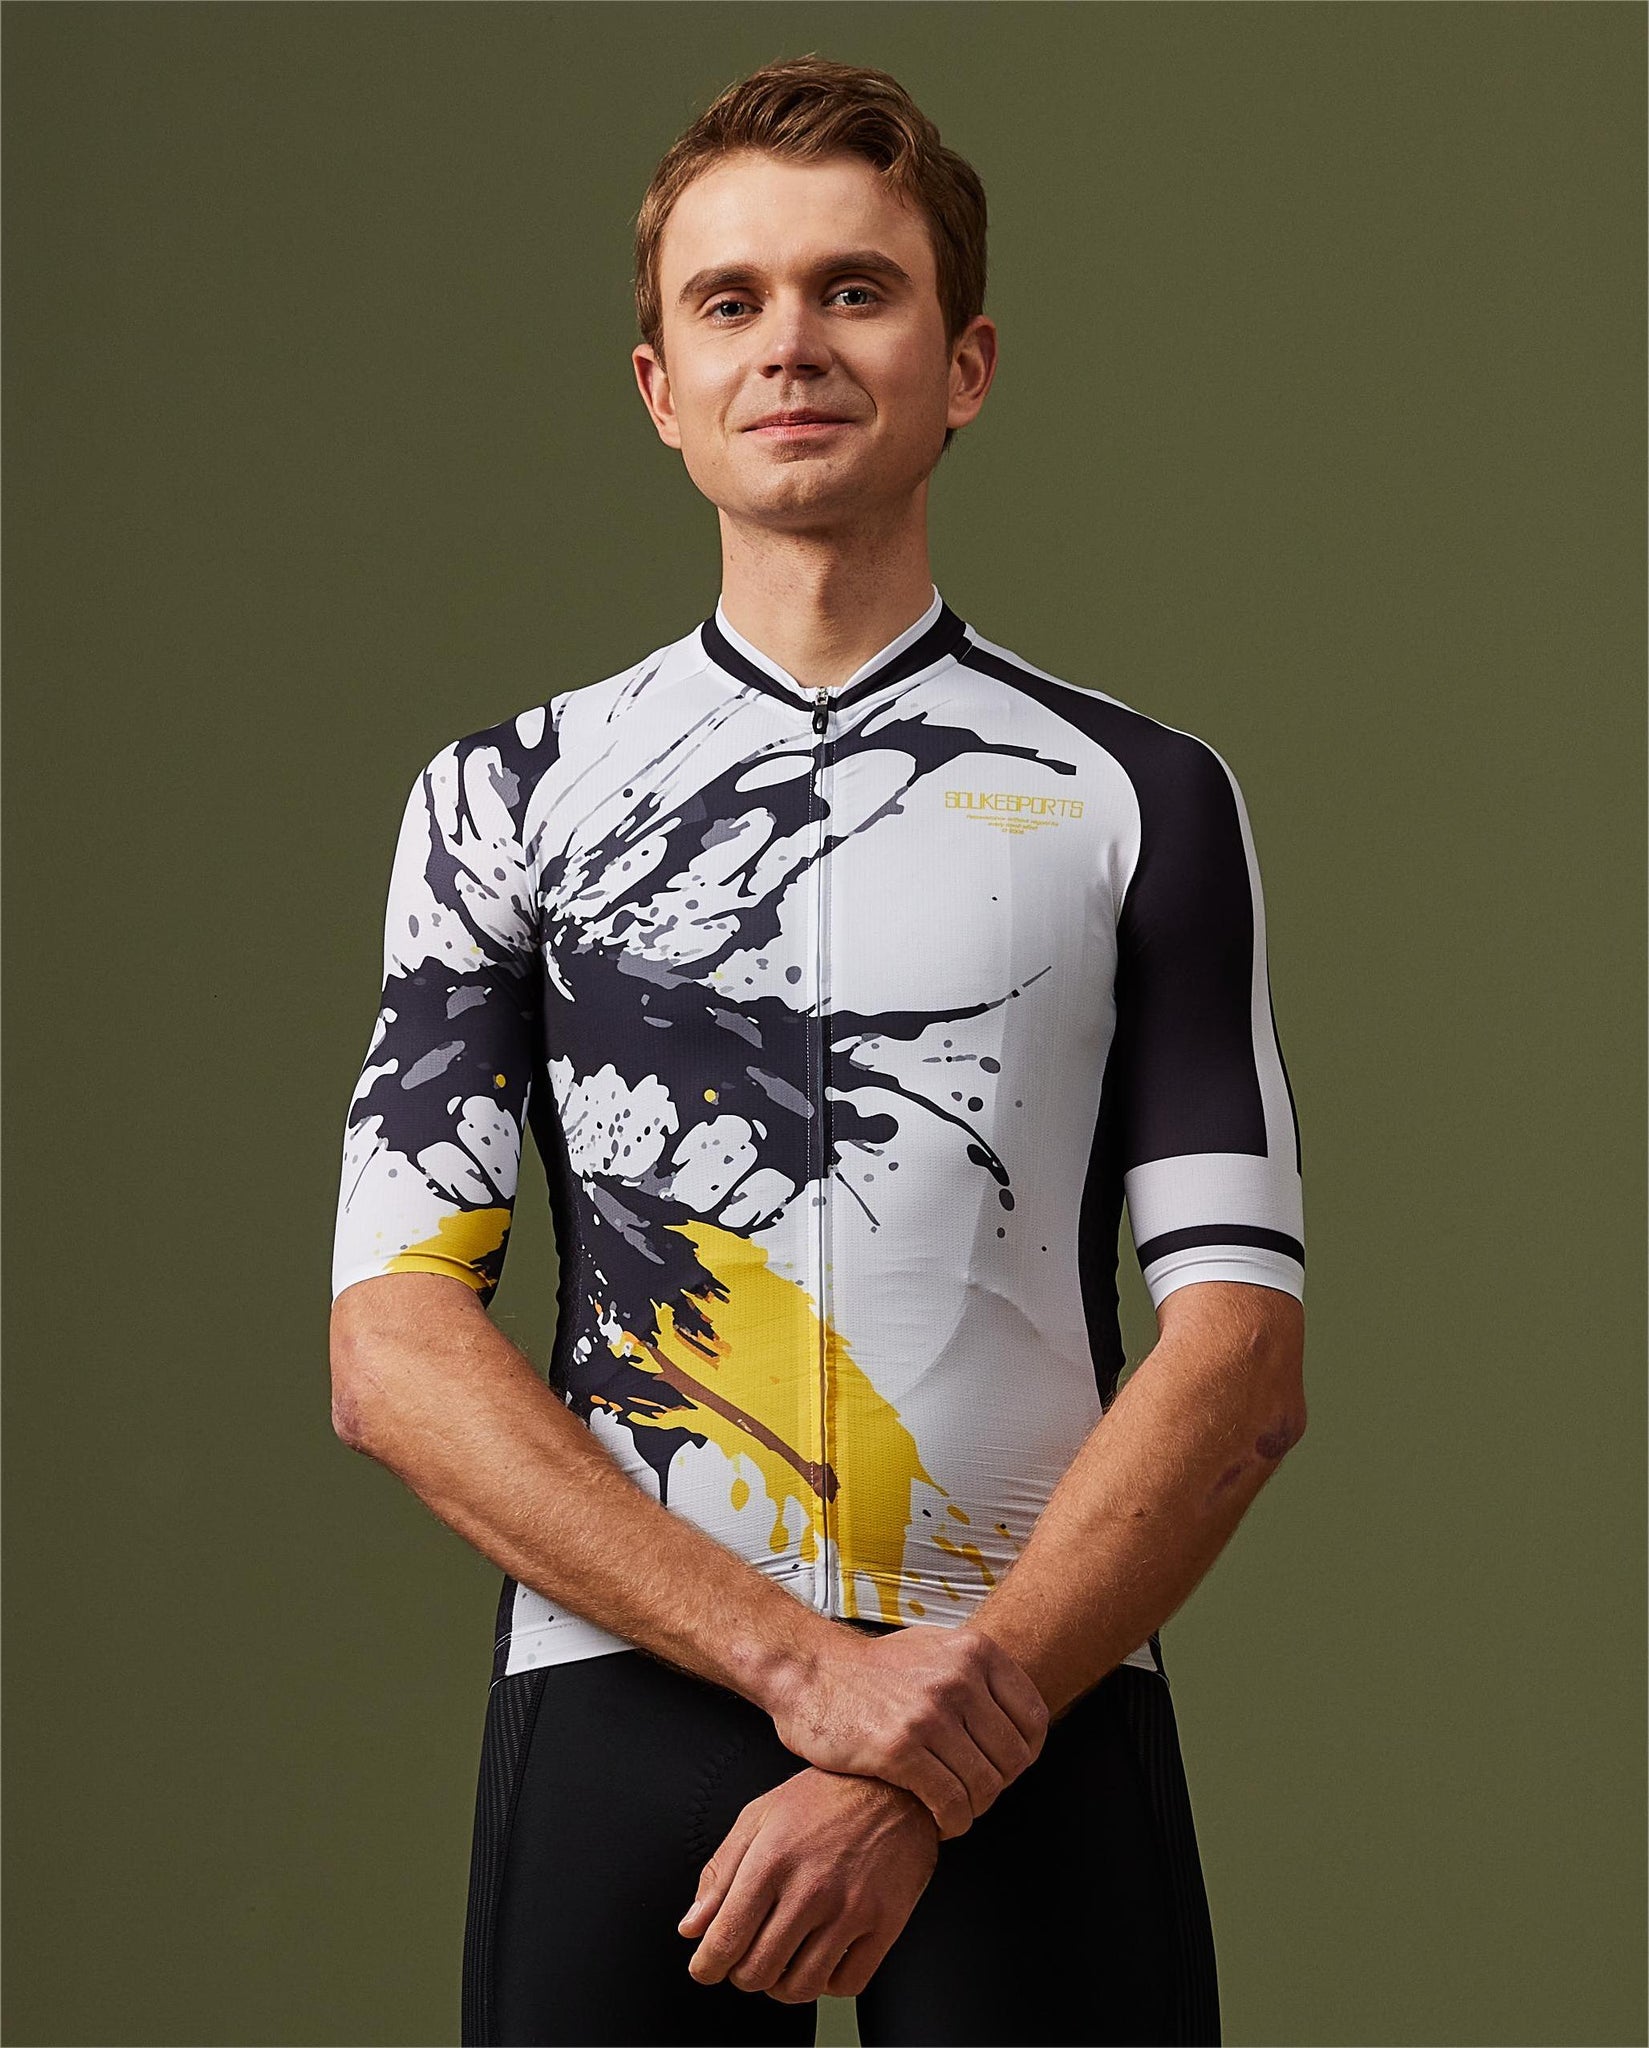 Soukesports, Minimalism, Unisex Cycling,Short Sleeve Jersey ,CS1184,black, white